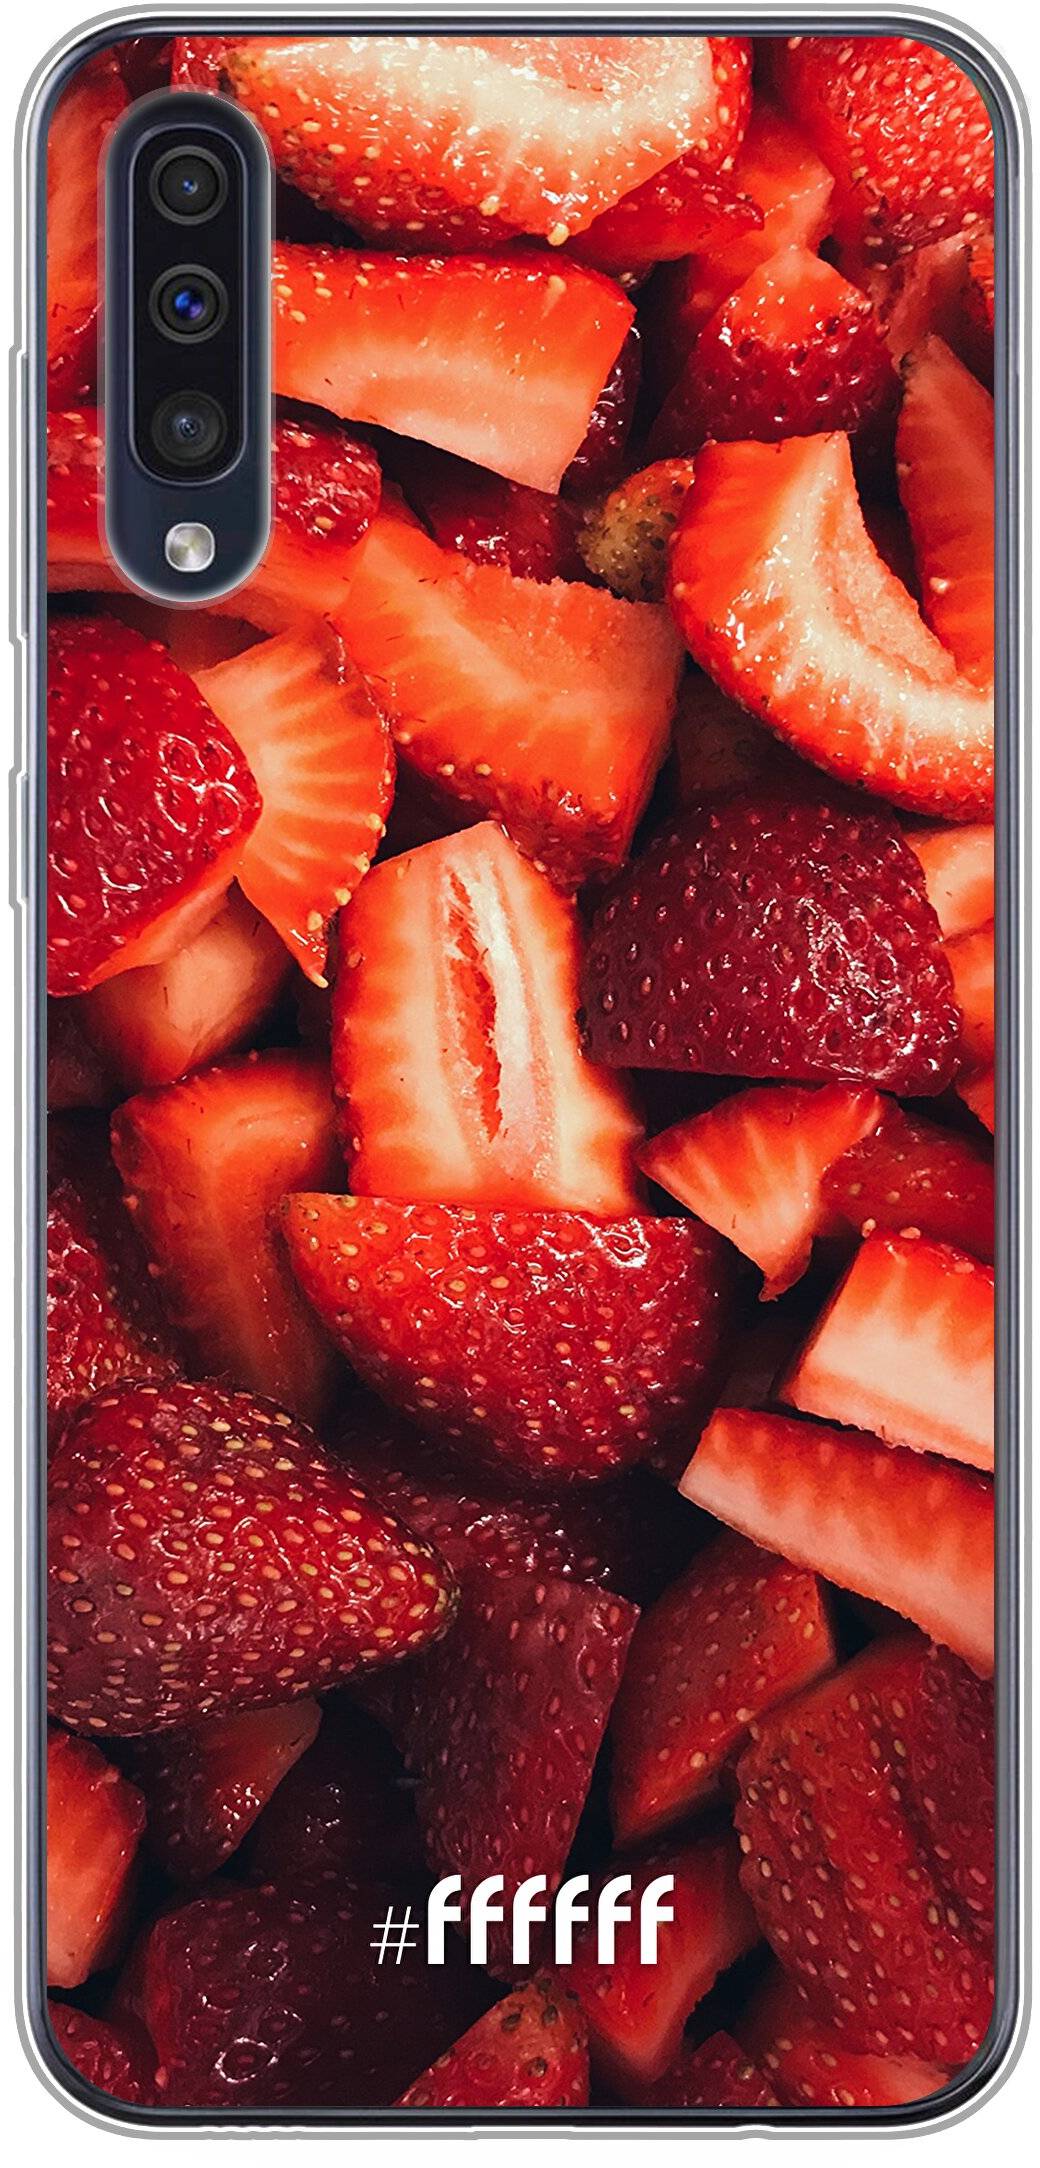 Strawberry Fields Galaxy A50s